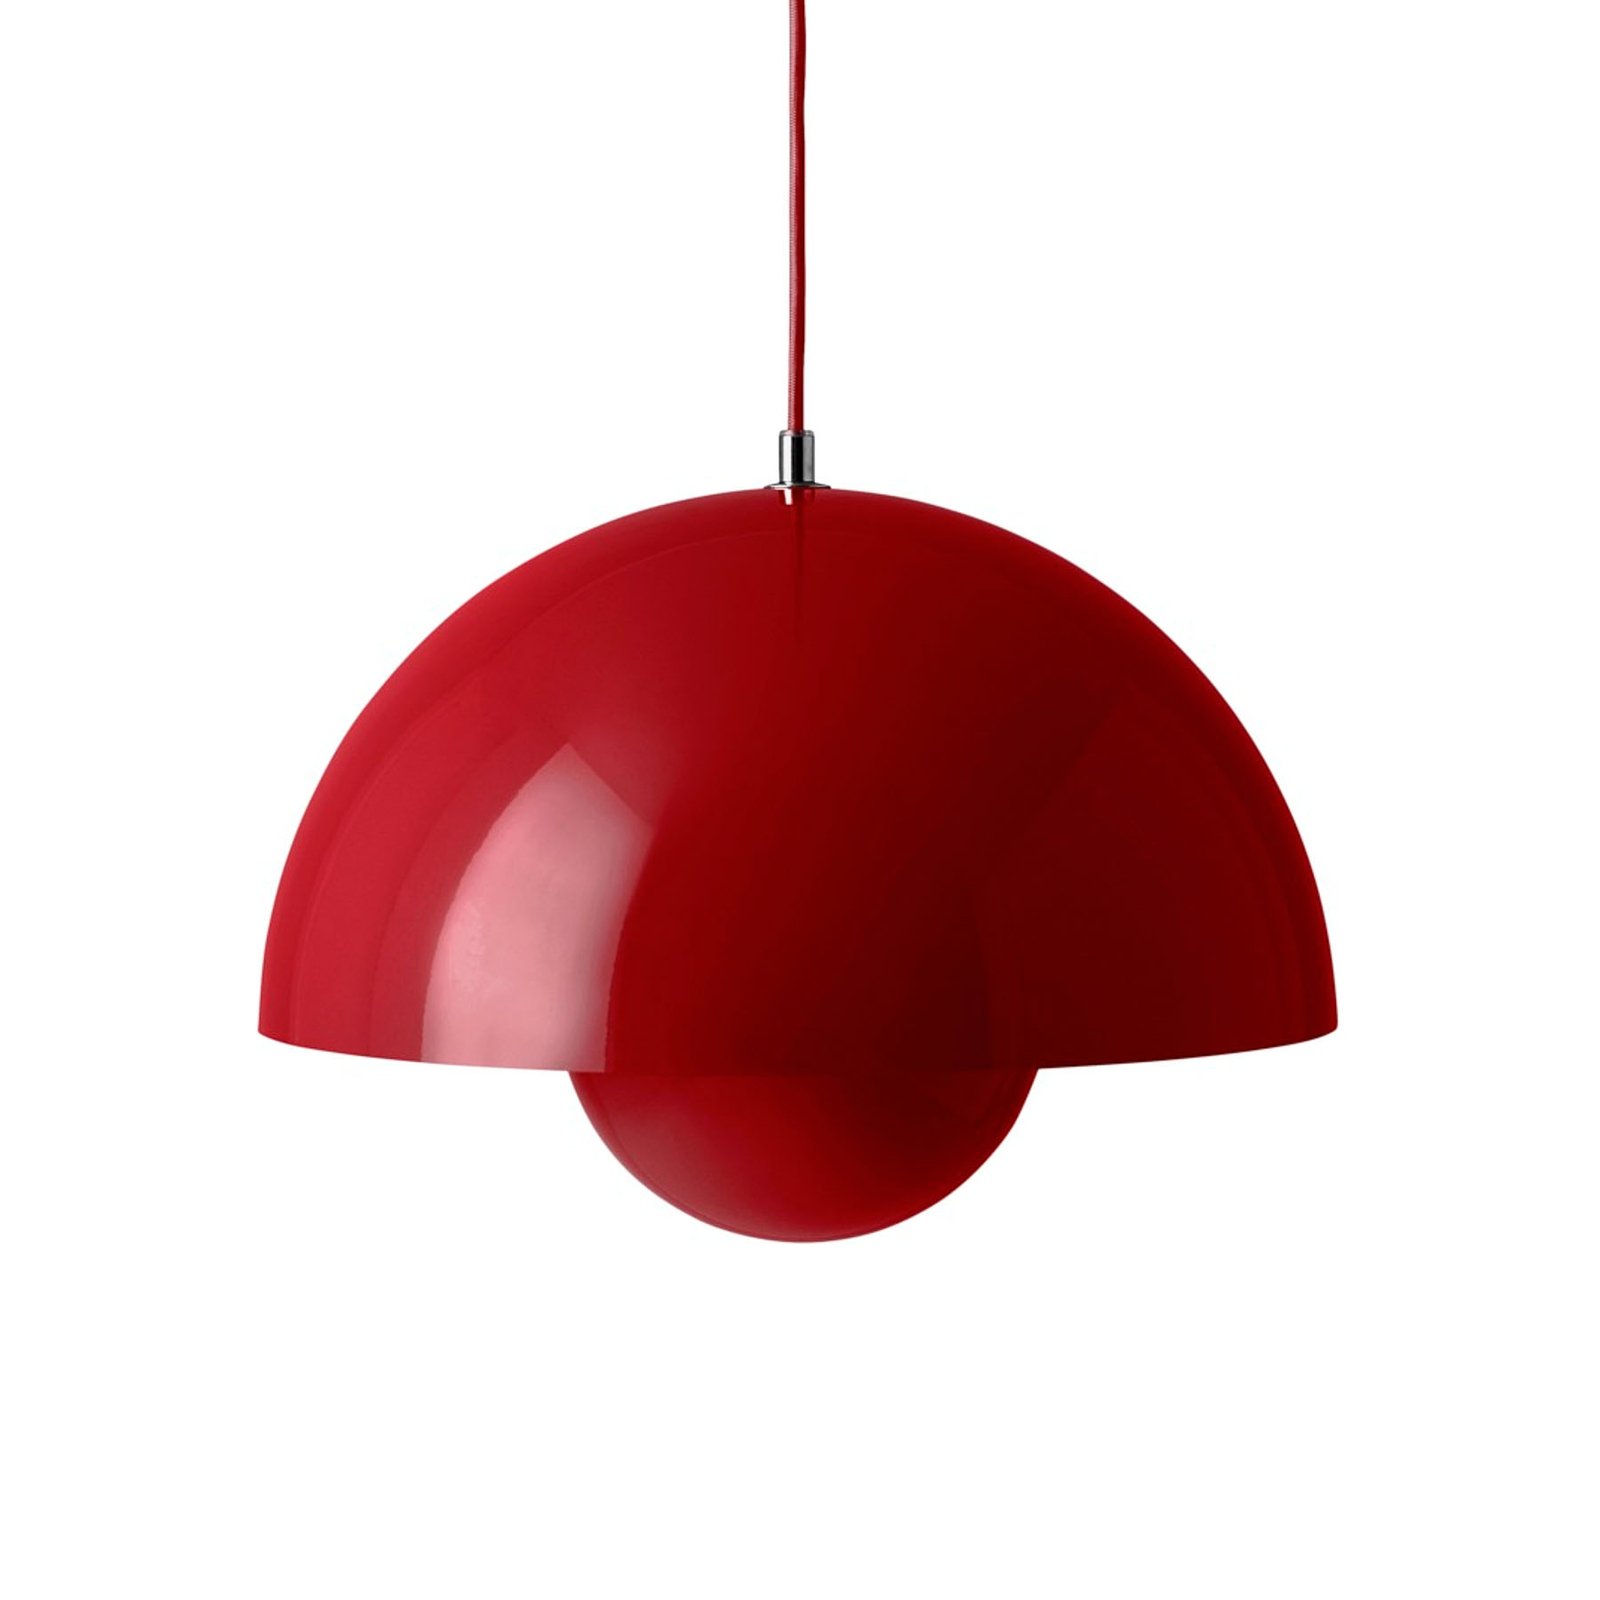 &Tradition hanglamp Bloempot VP7, Ø 37 cm, vermiljoen rood